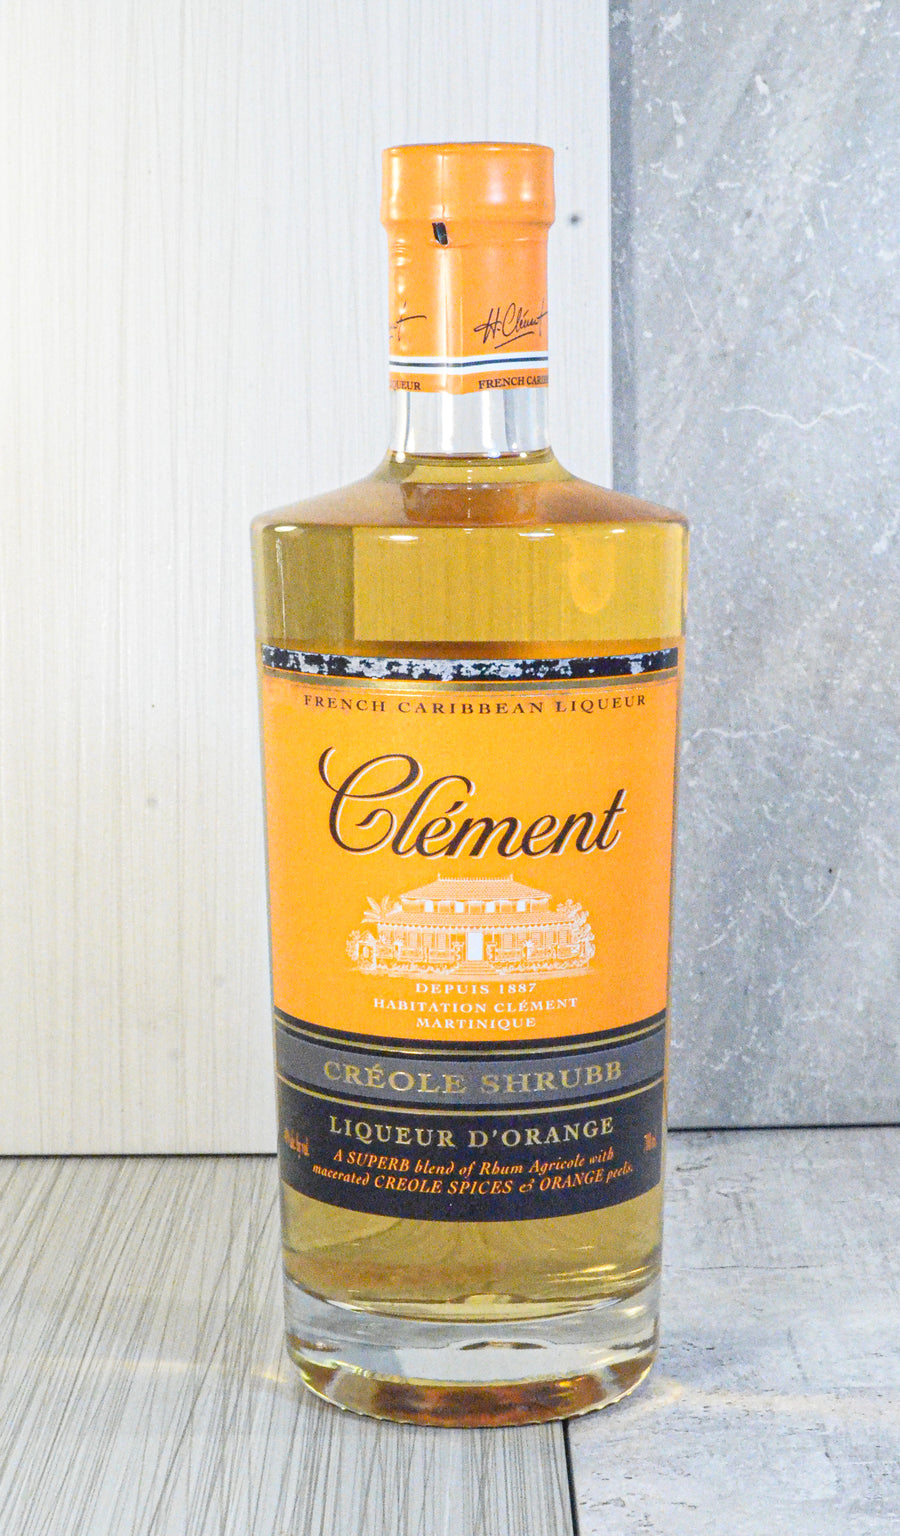 Rhum Clement, Creole Shrubb, Liqueur D'Orange